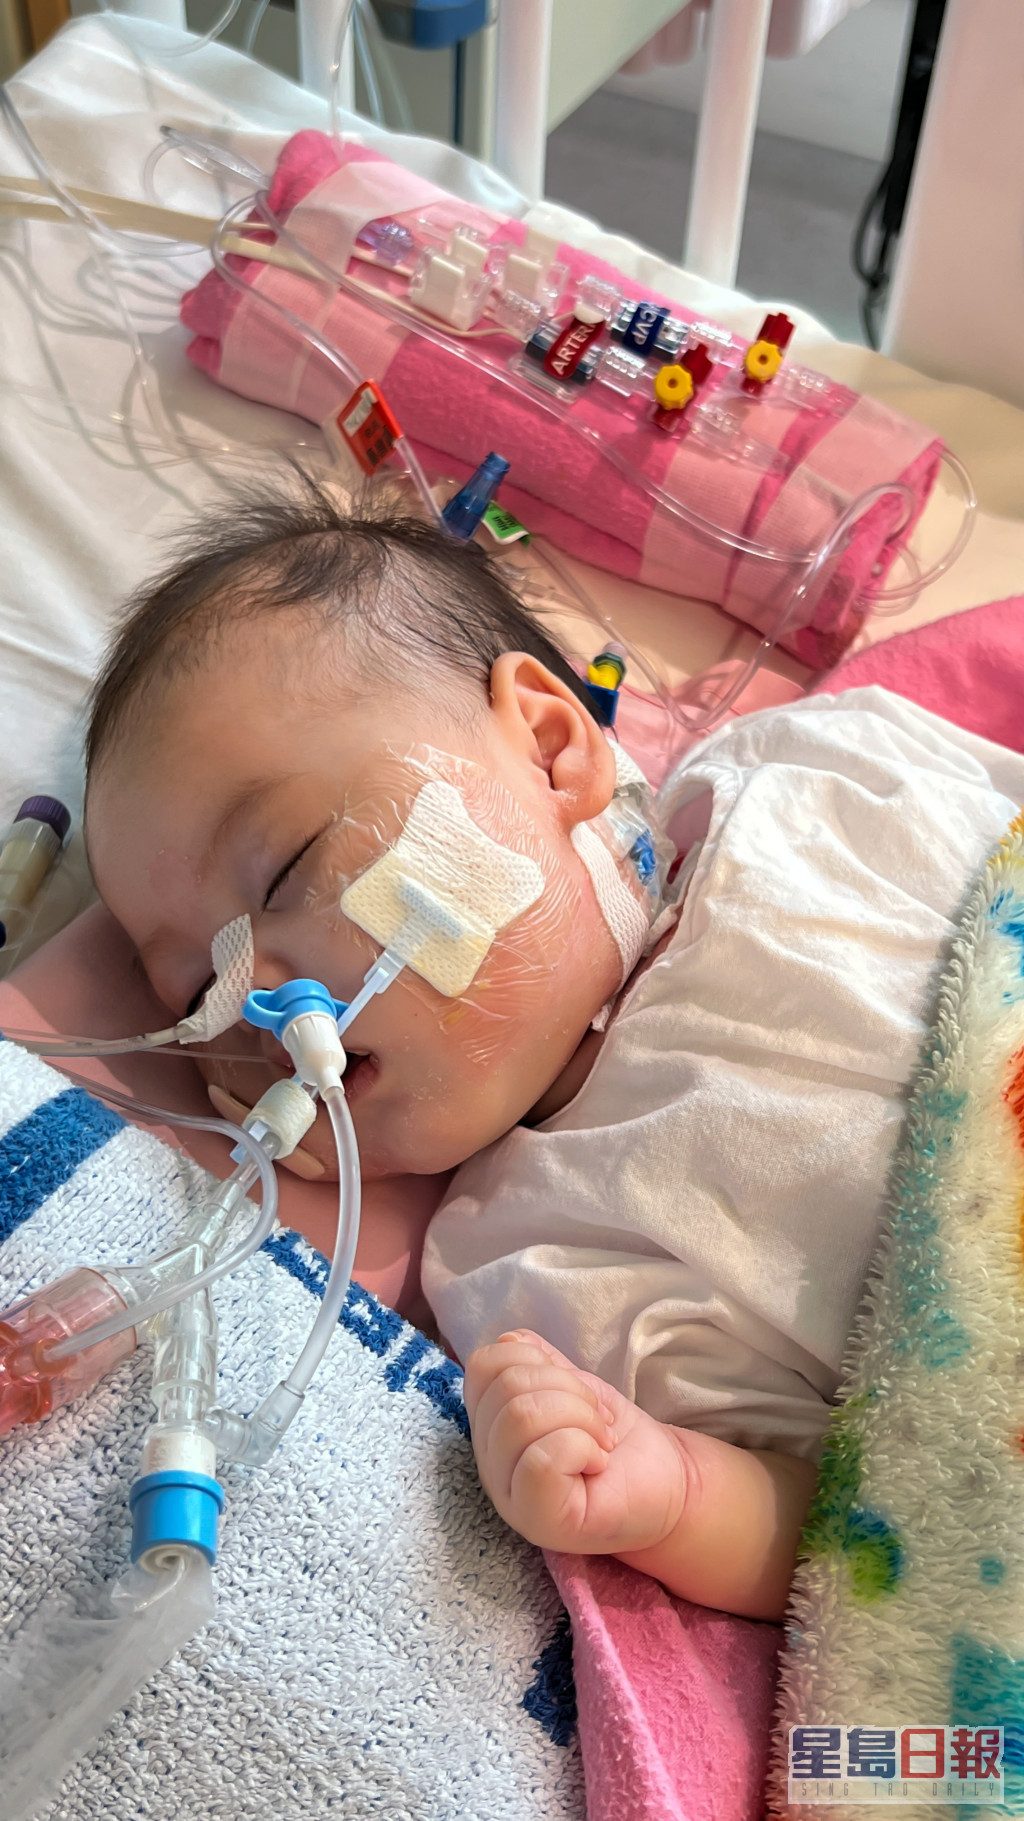 4个月大女婴芷希于今日凌晨完成心脏移植手术。资料图片